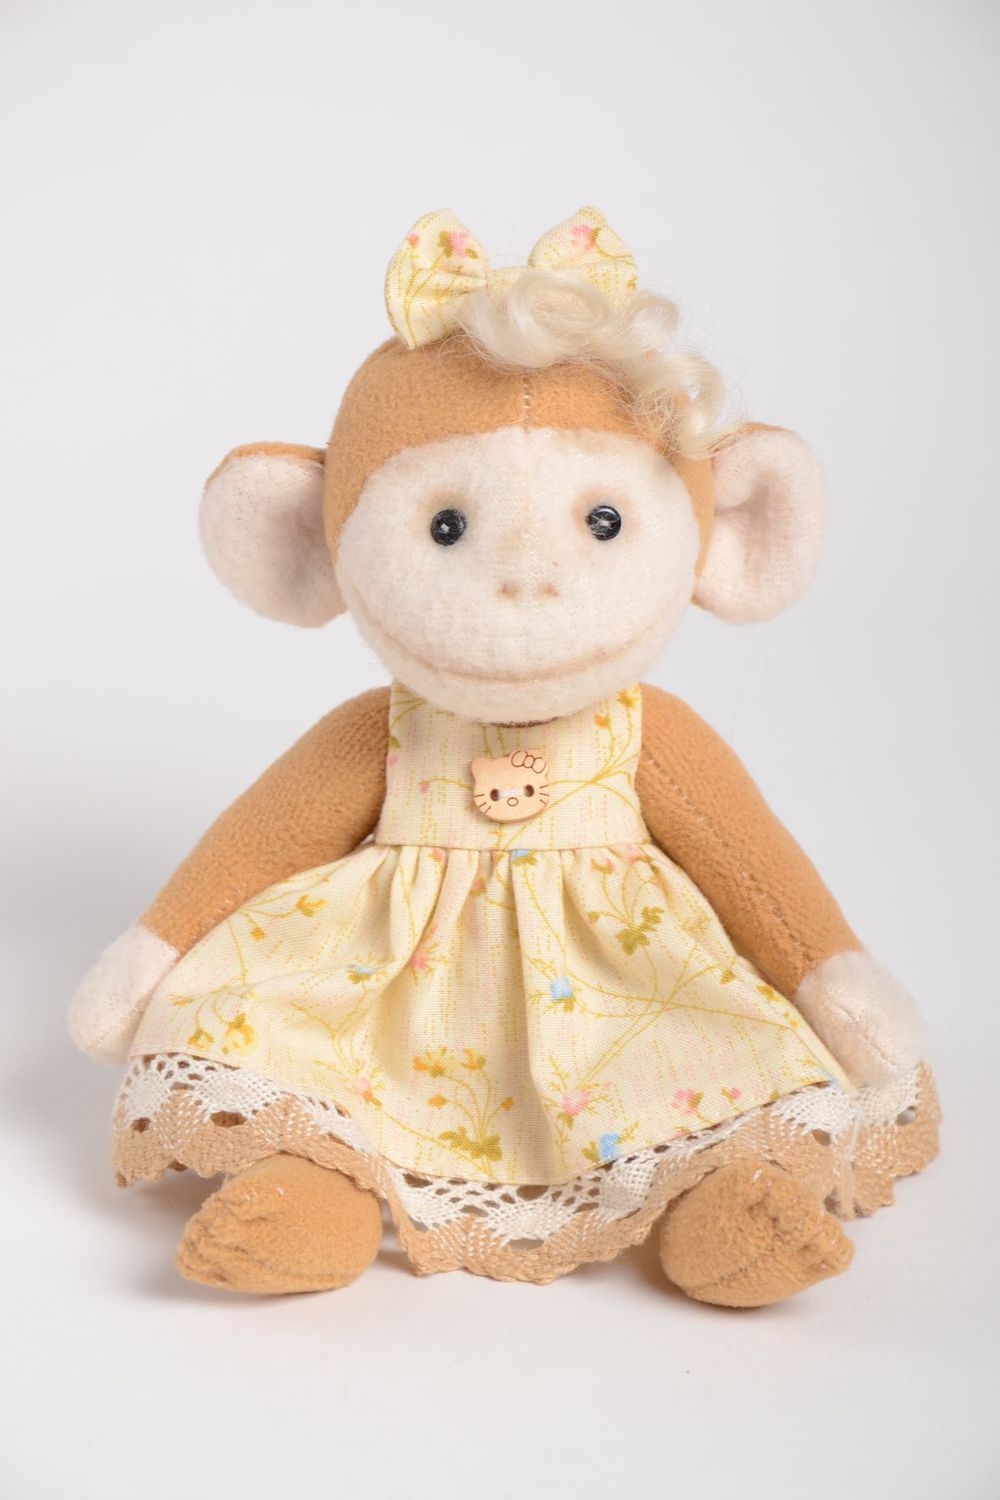 Игрушка обезьяна ручной работы игрушка для малышей авторская игрушка в платье фото 2